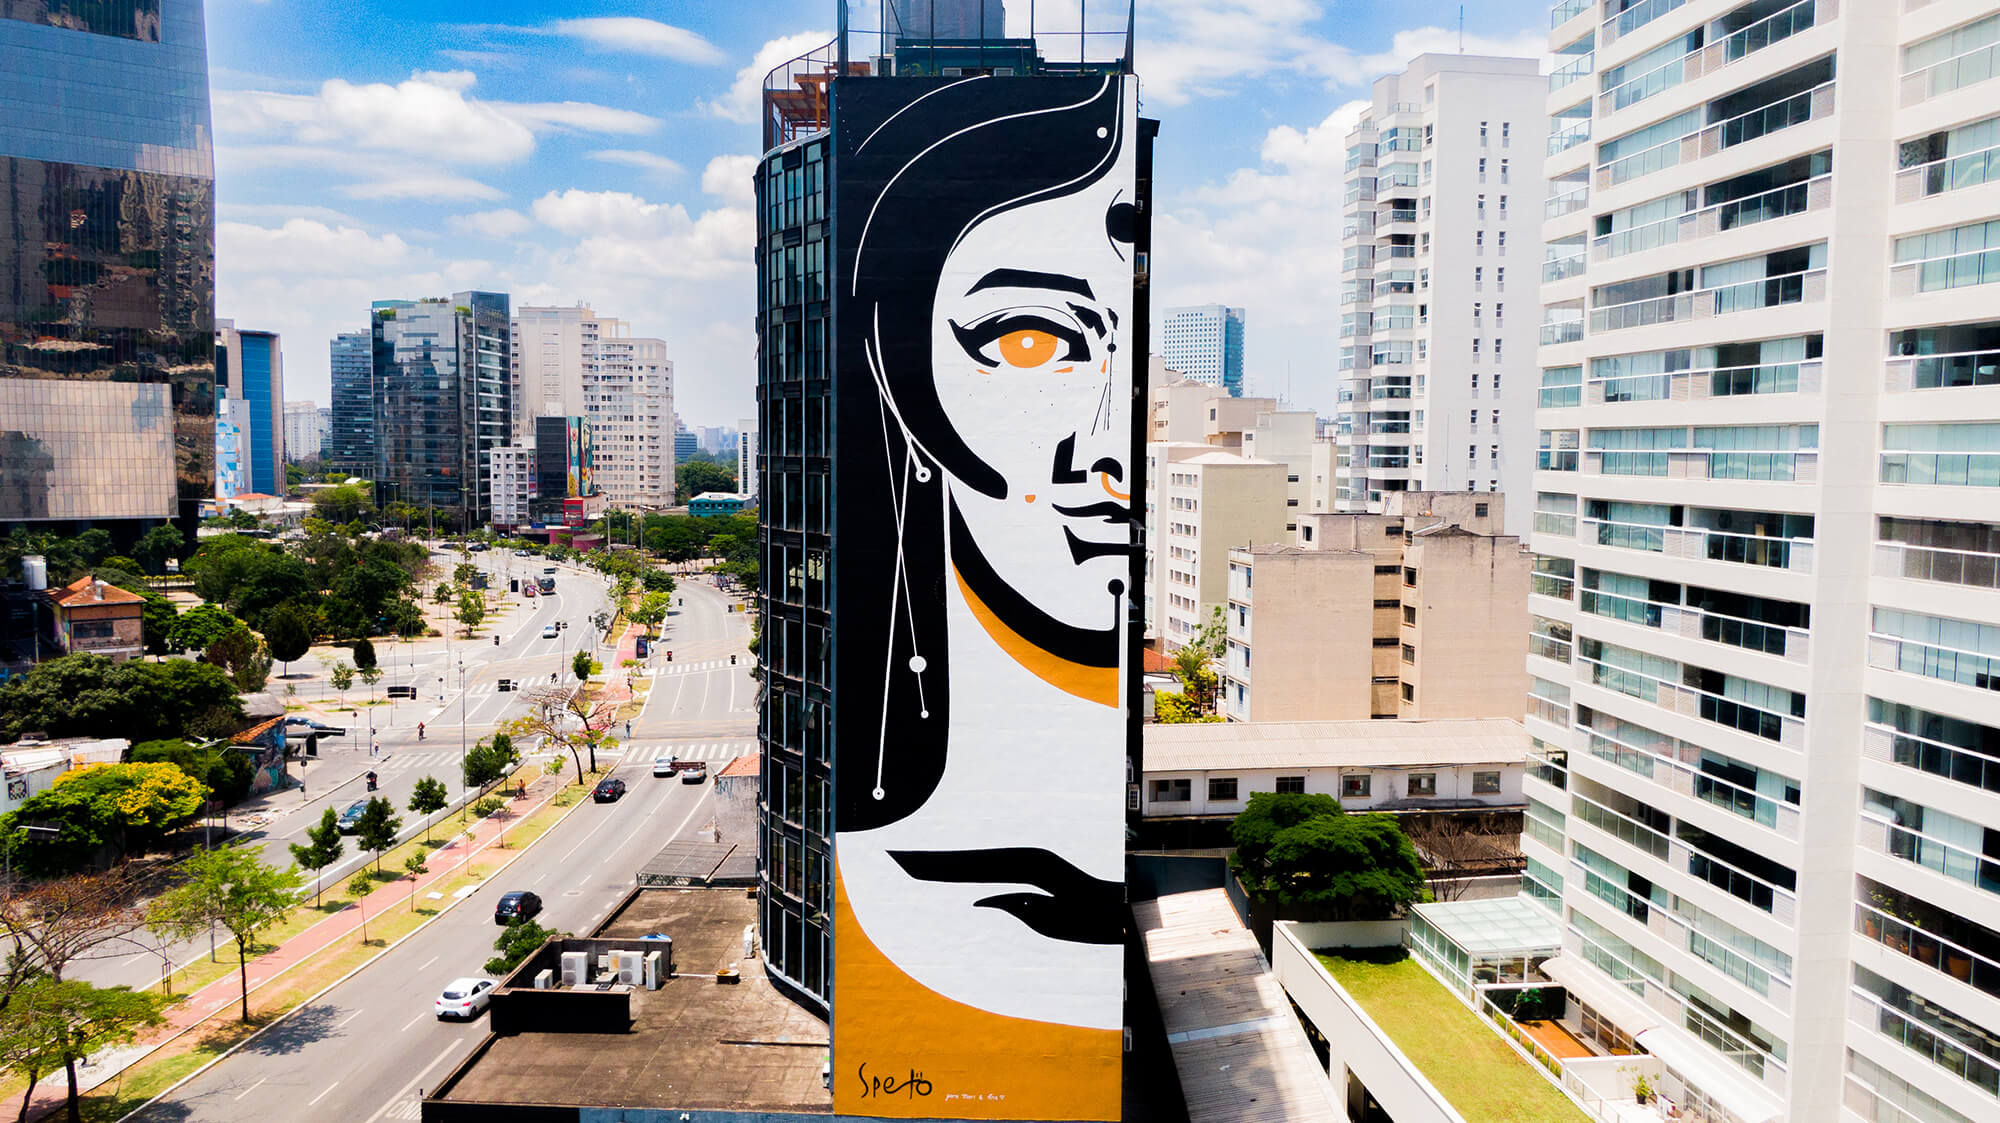 Festival de Arte Urbana cria 2200 m² de grafites nos prédios de São Paulo